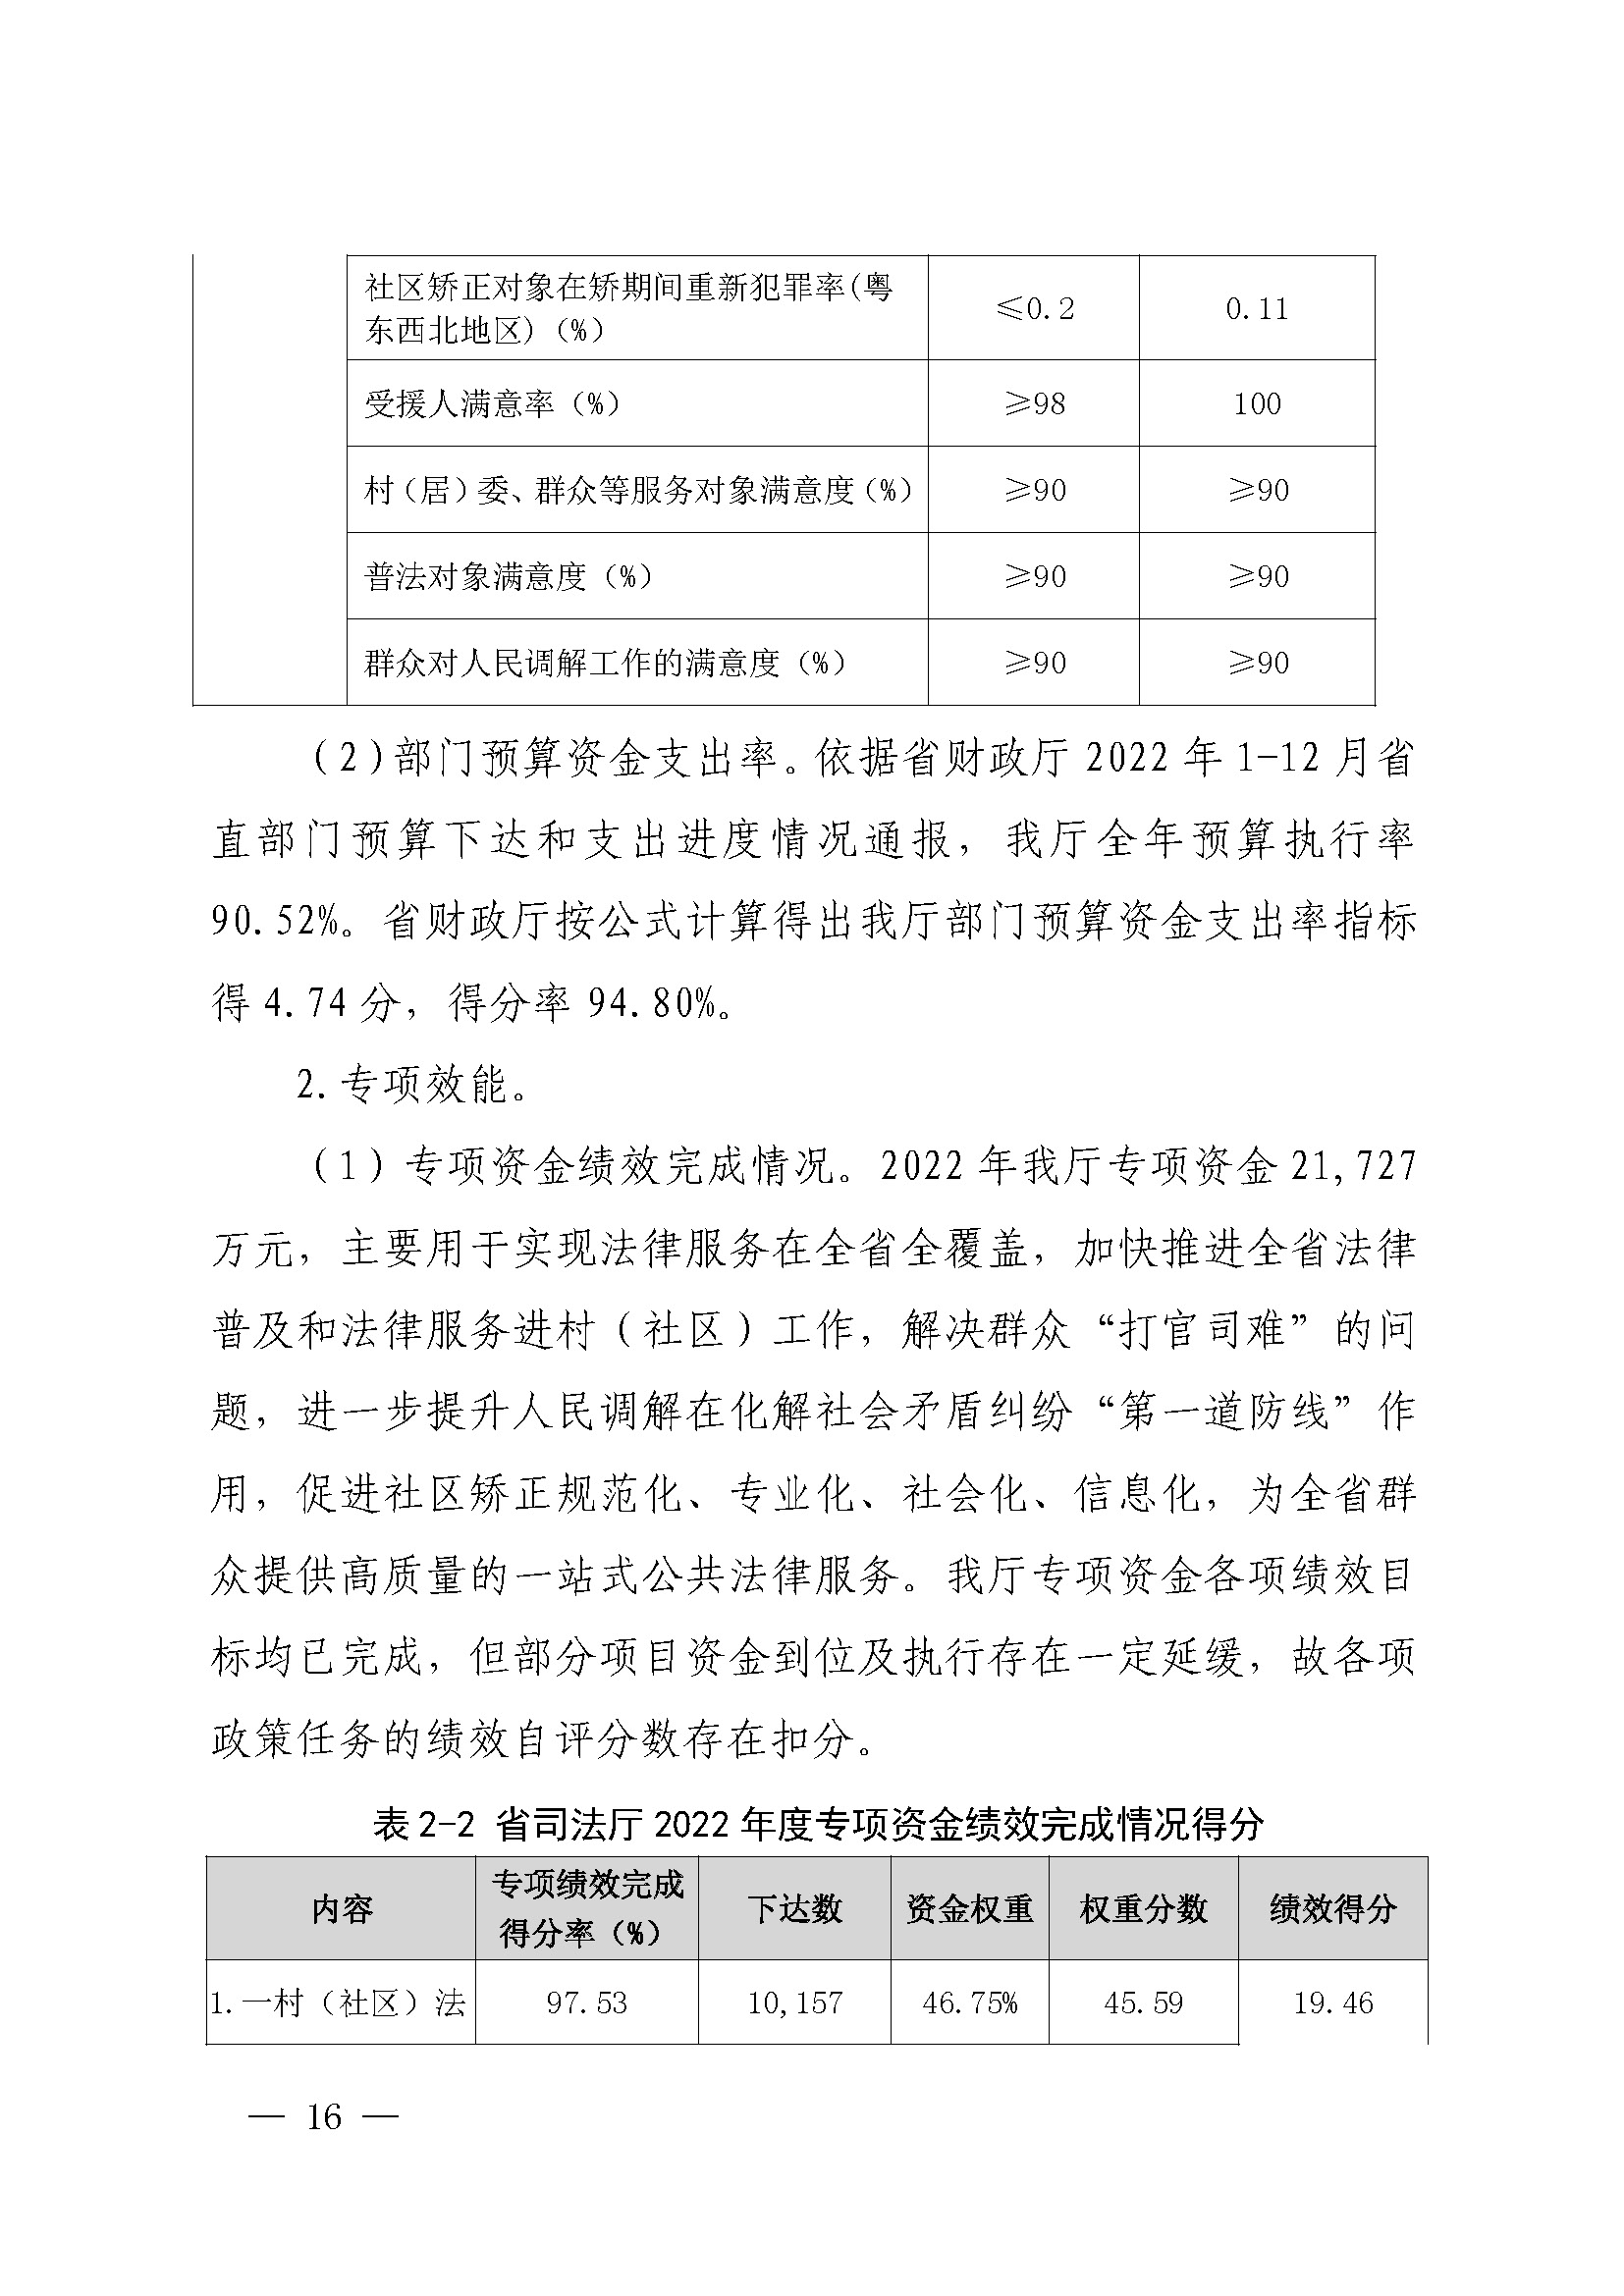 广东省司法厅2022年度部门整体支出绩效自评报告_页面_16.jpg